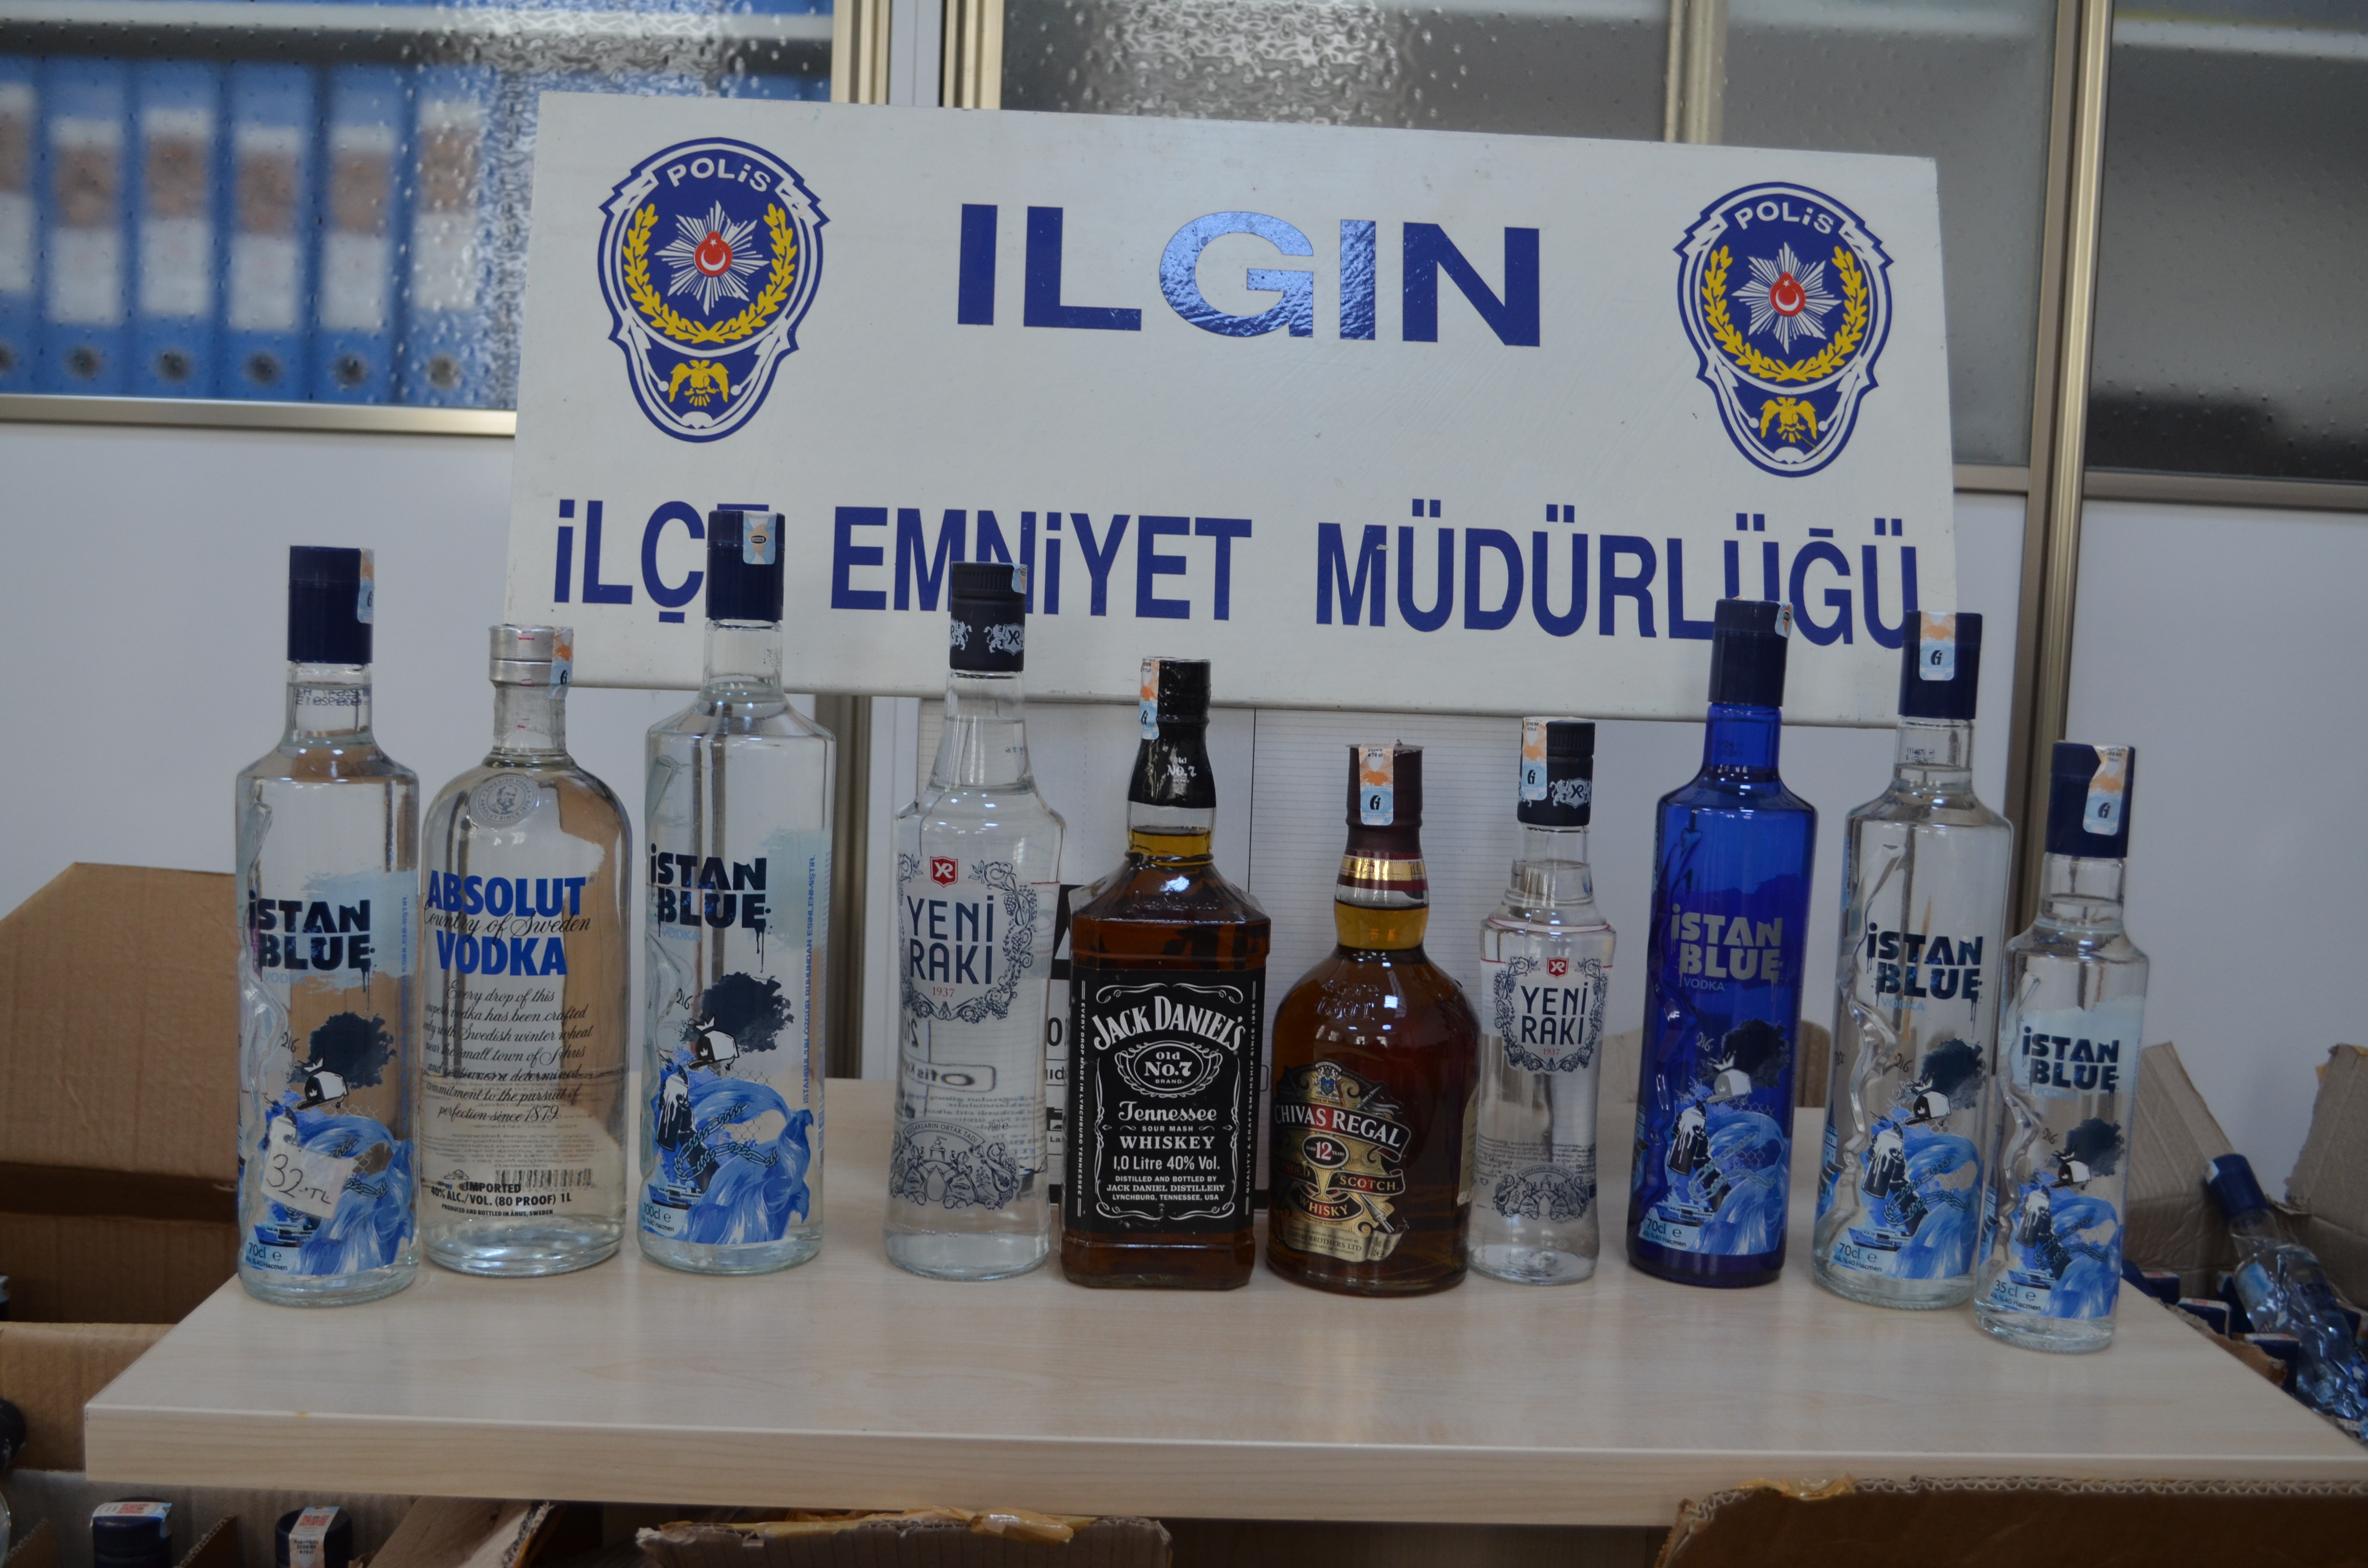 Ilgın Polisi tarafından 229 adet Kaçak içki ele geçirildi; 2 kişi gözaltına alındı.